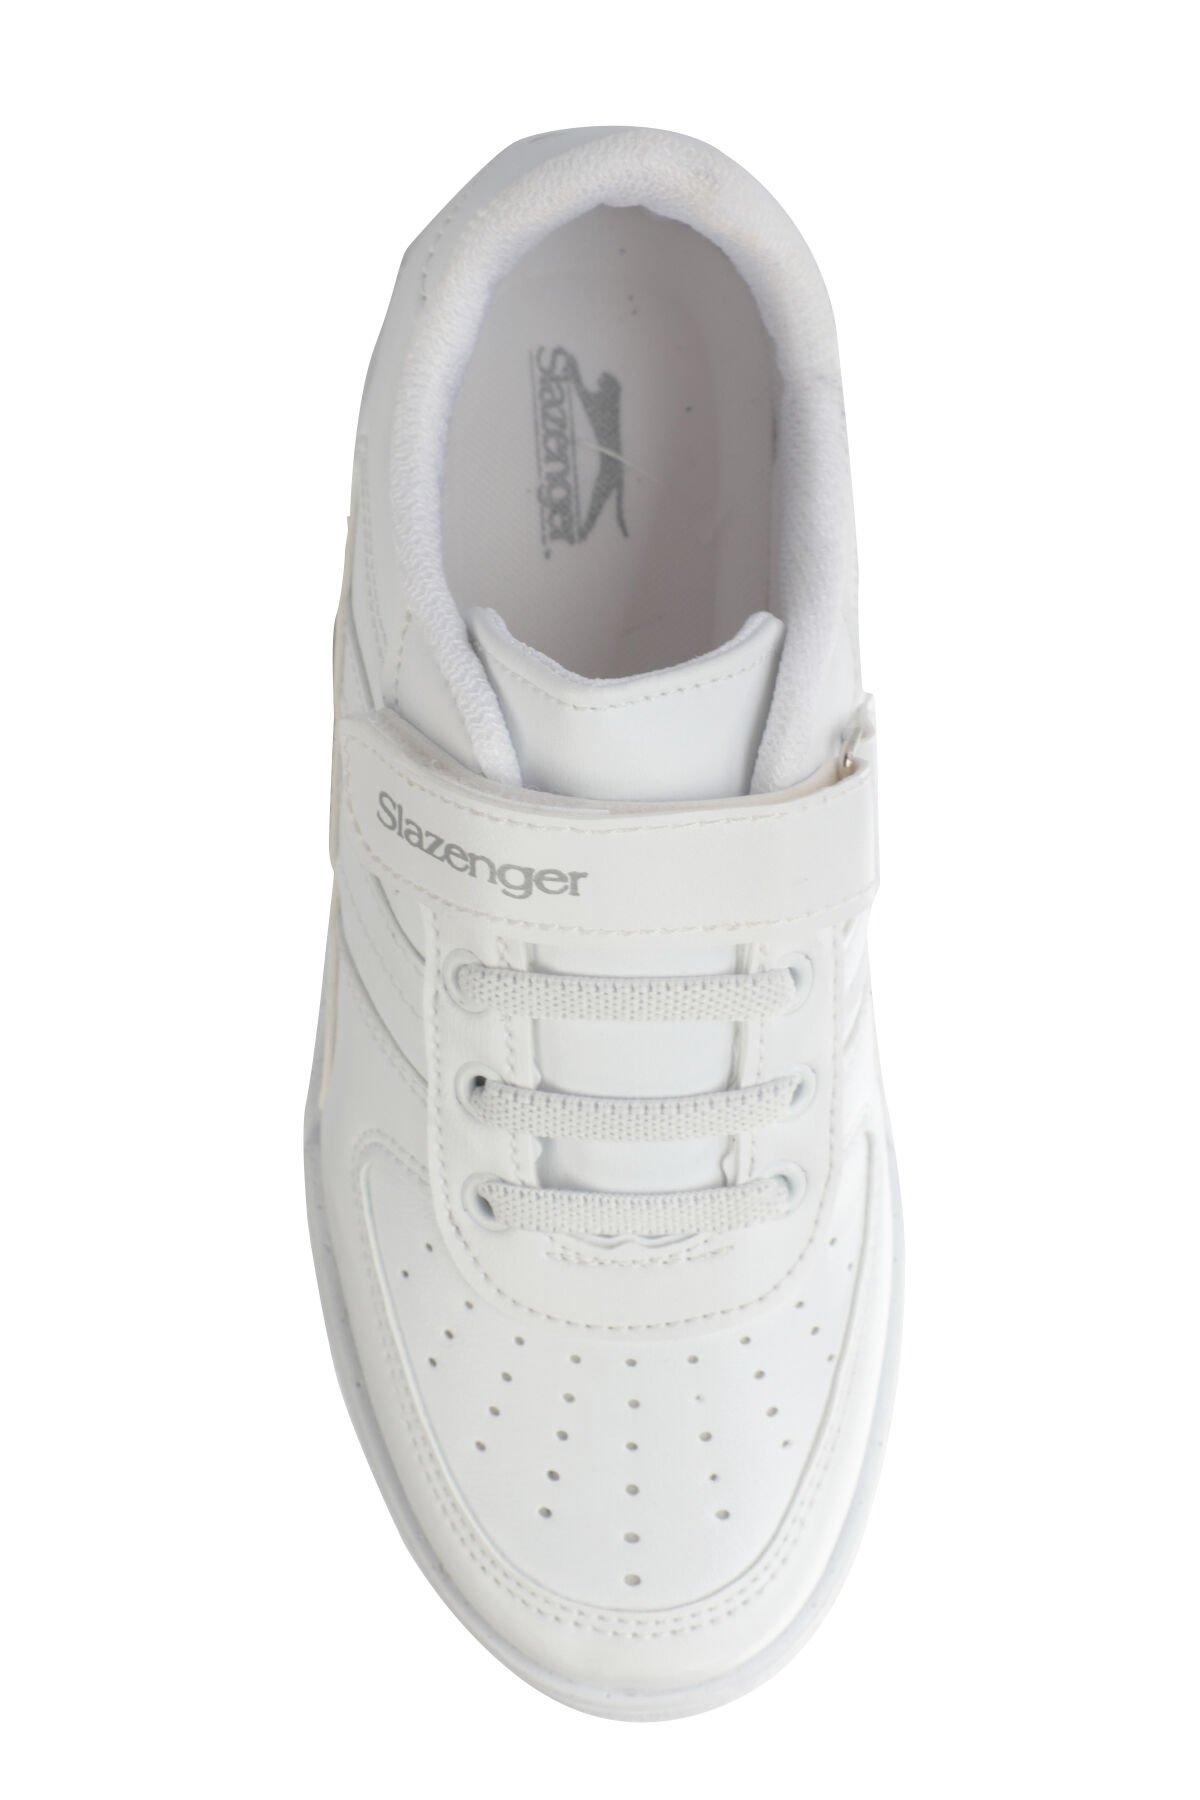 CAMP I Sneaker Erkek Çocuk Ayakkabı Beyaz - Thumbnail